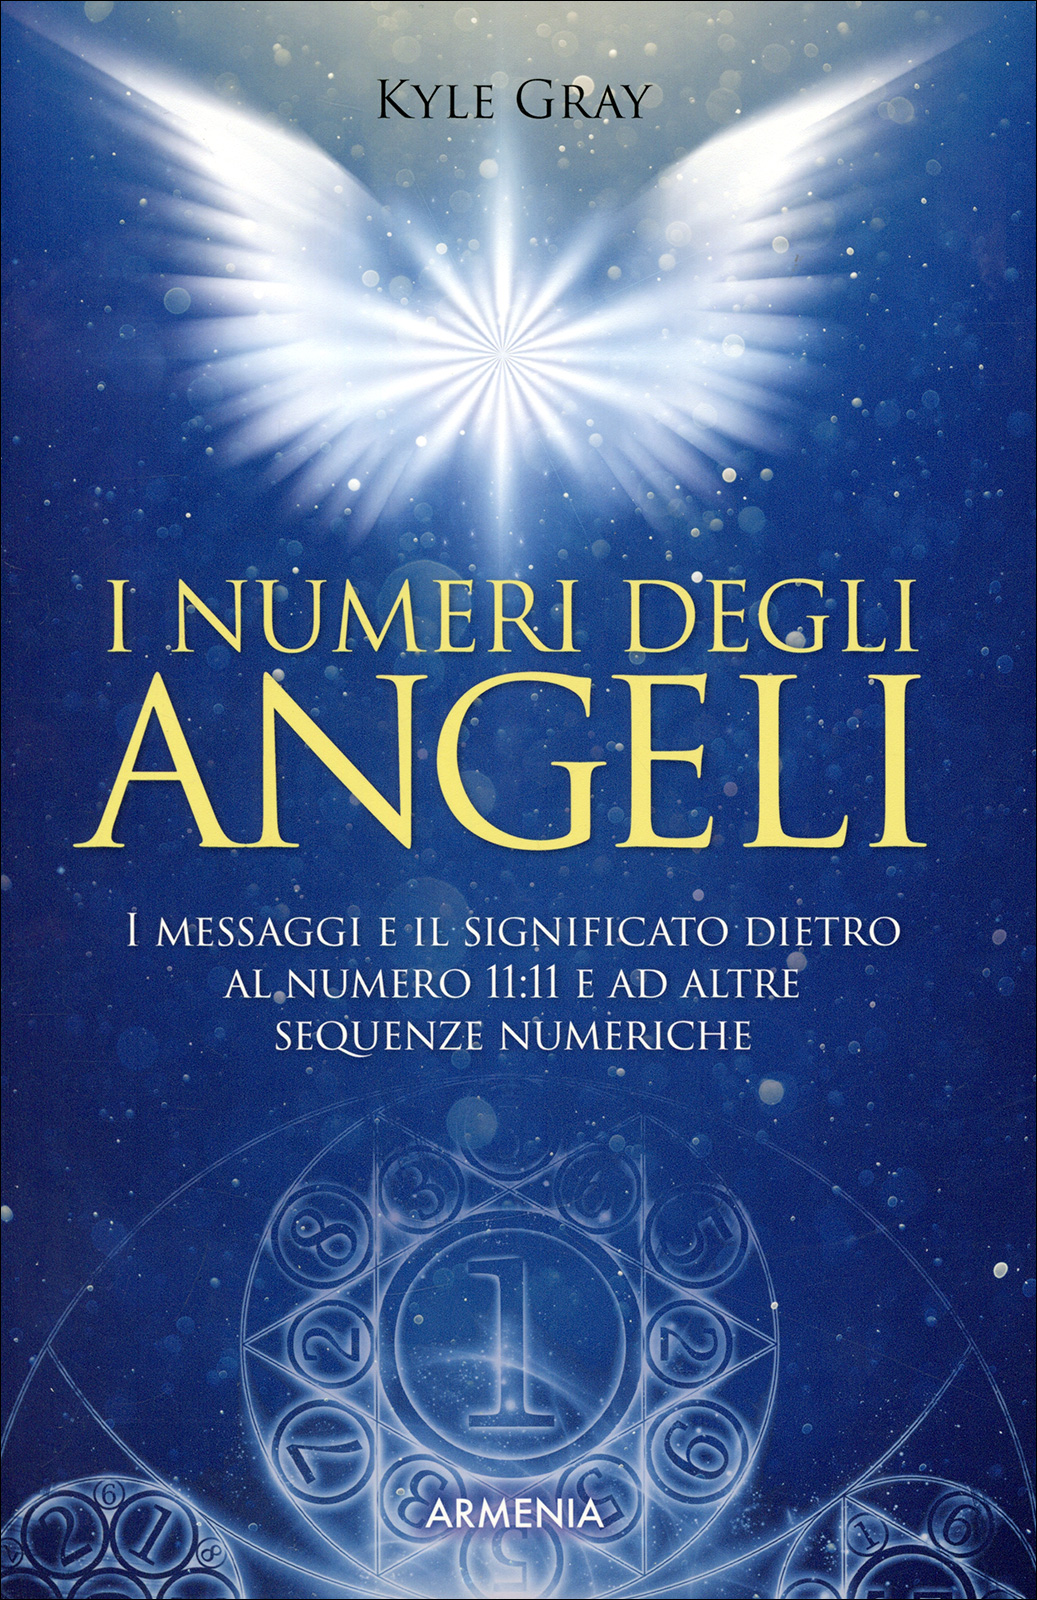 ڈبل نمبرز: فرشتہ معنی اور عددی علم